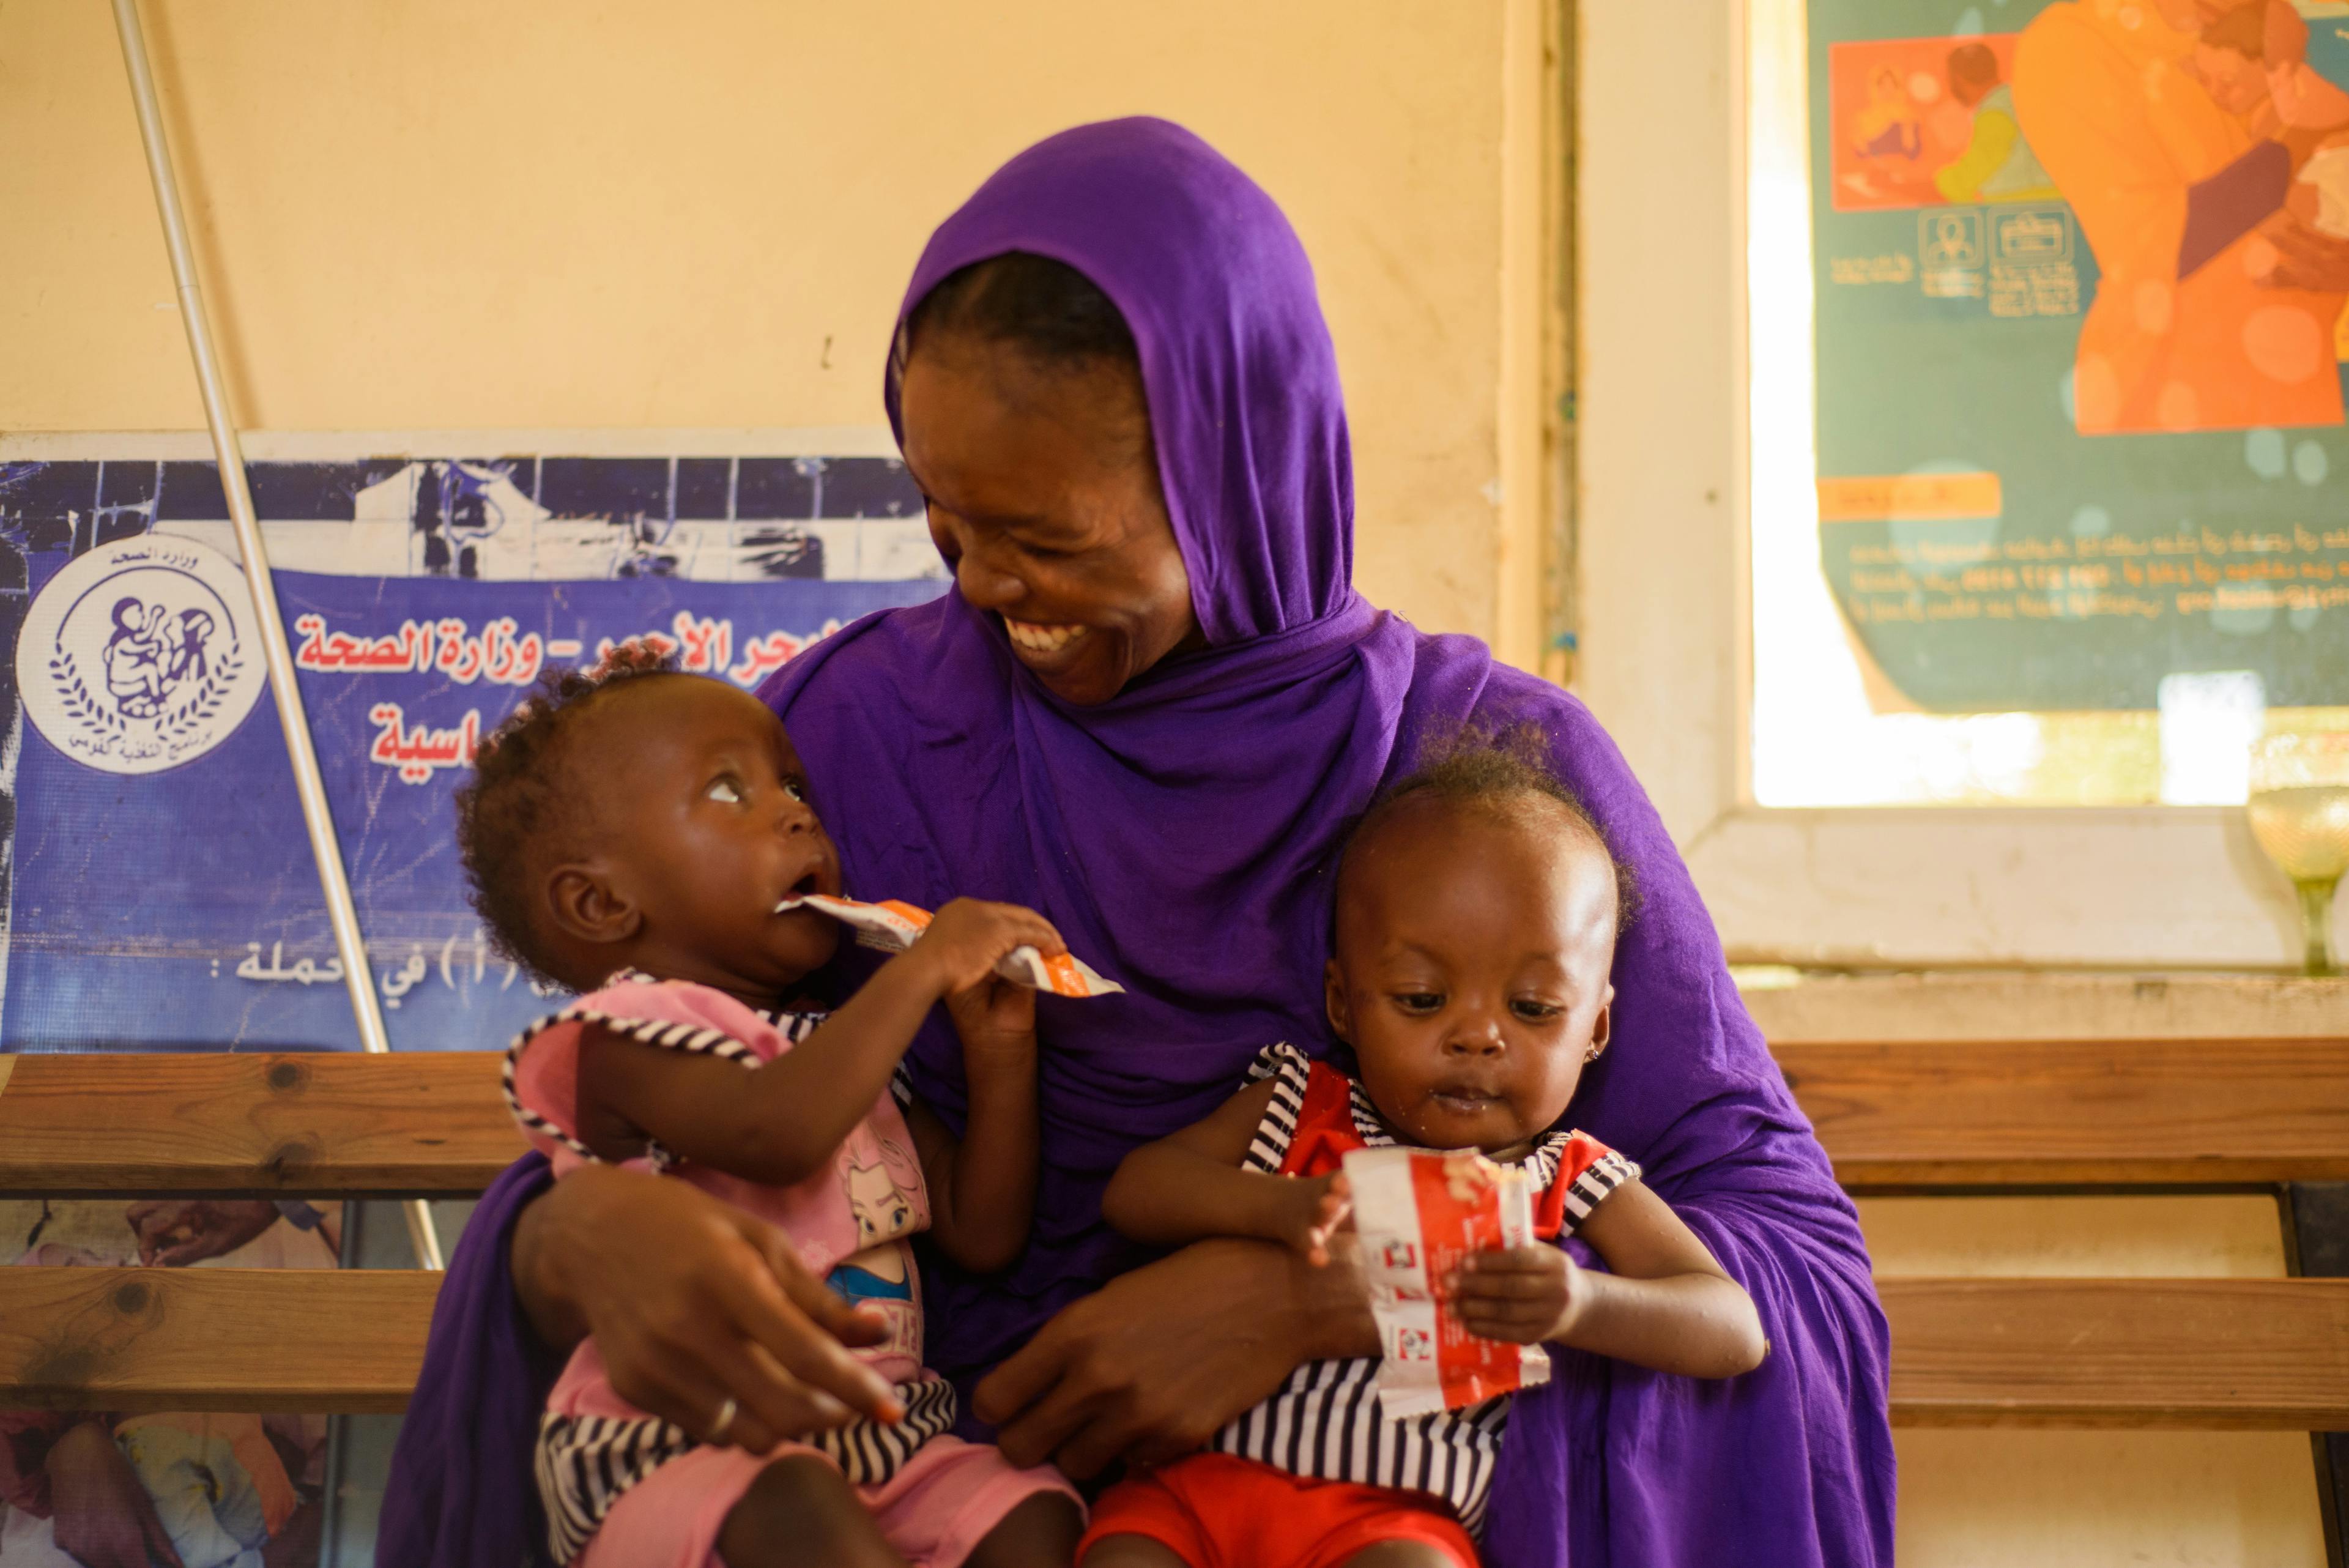 Tvillingar i mammas knä - nötkräm - Sudan 2023